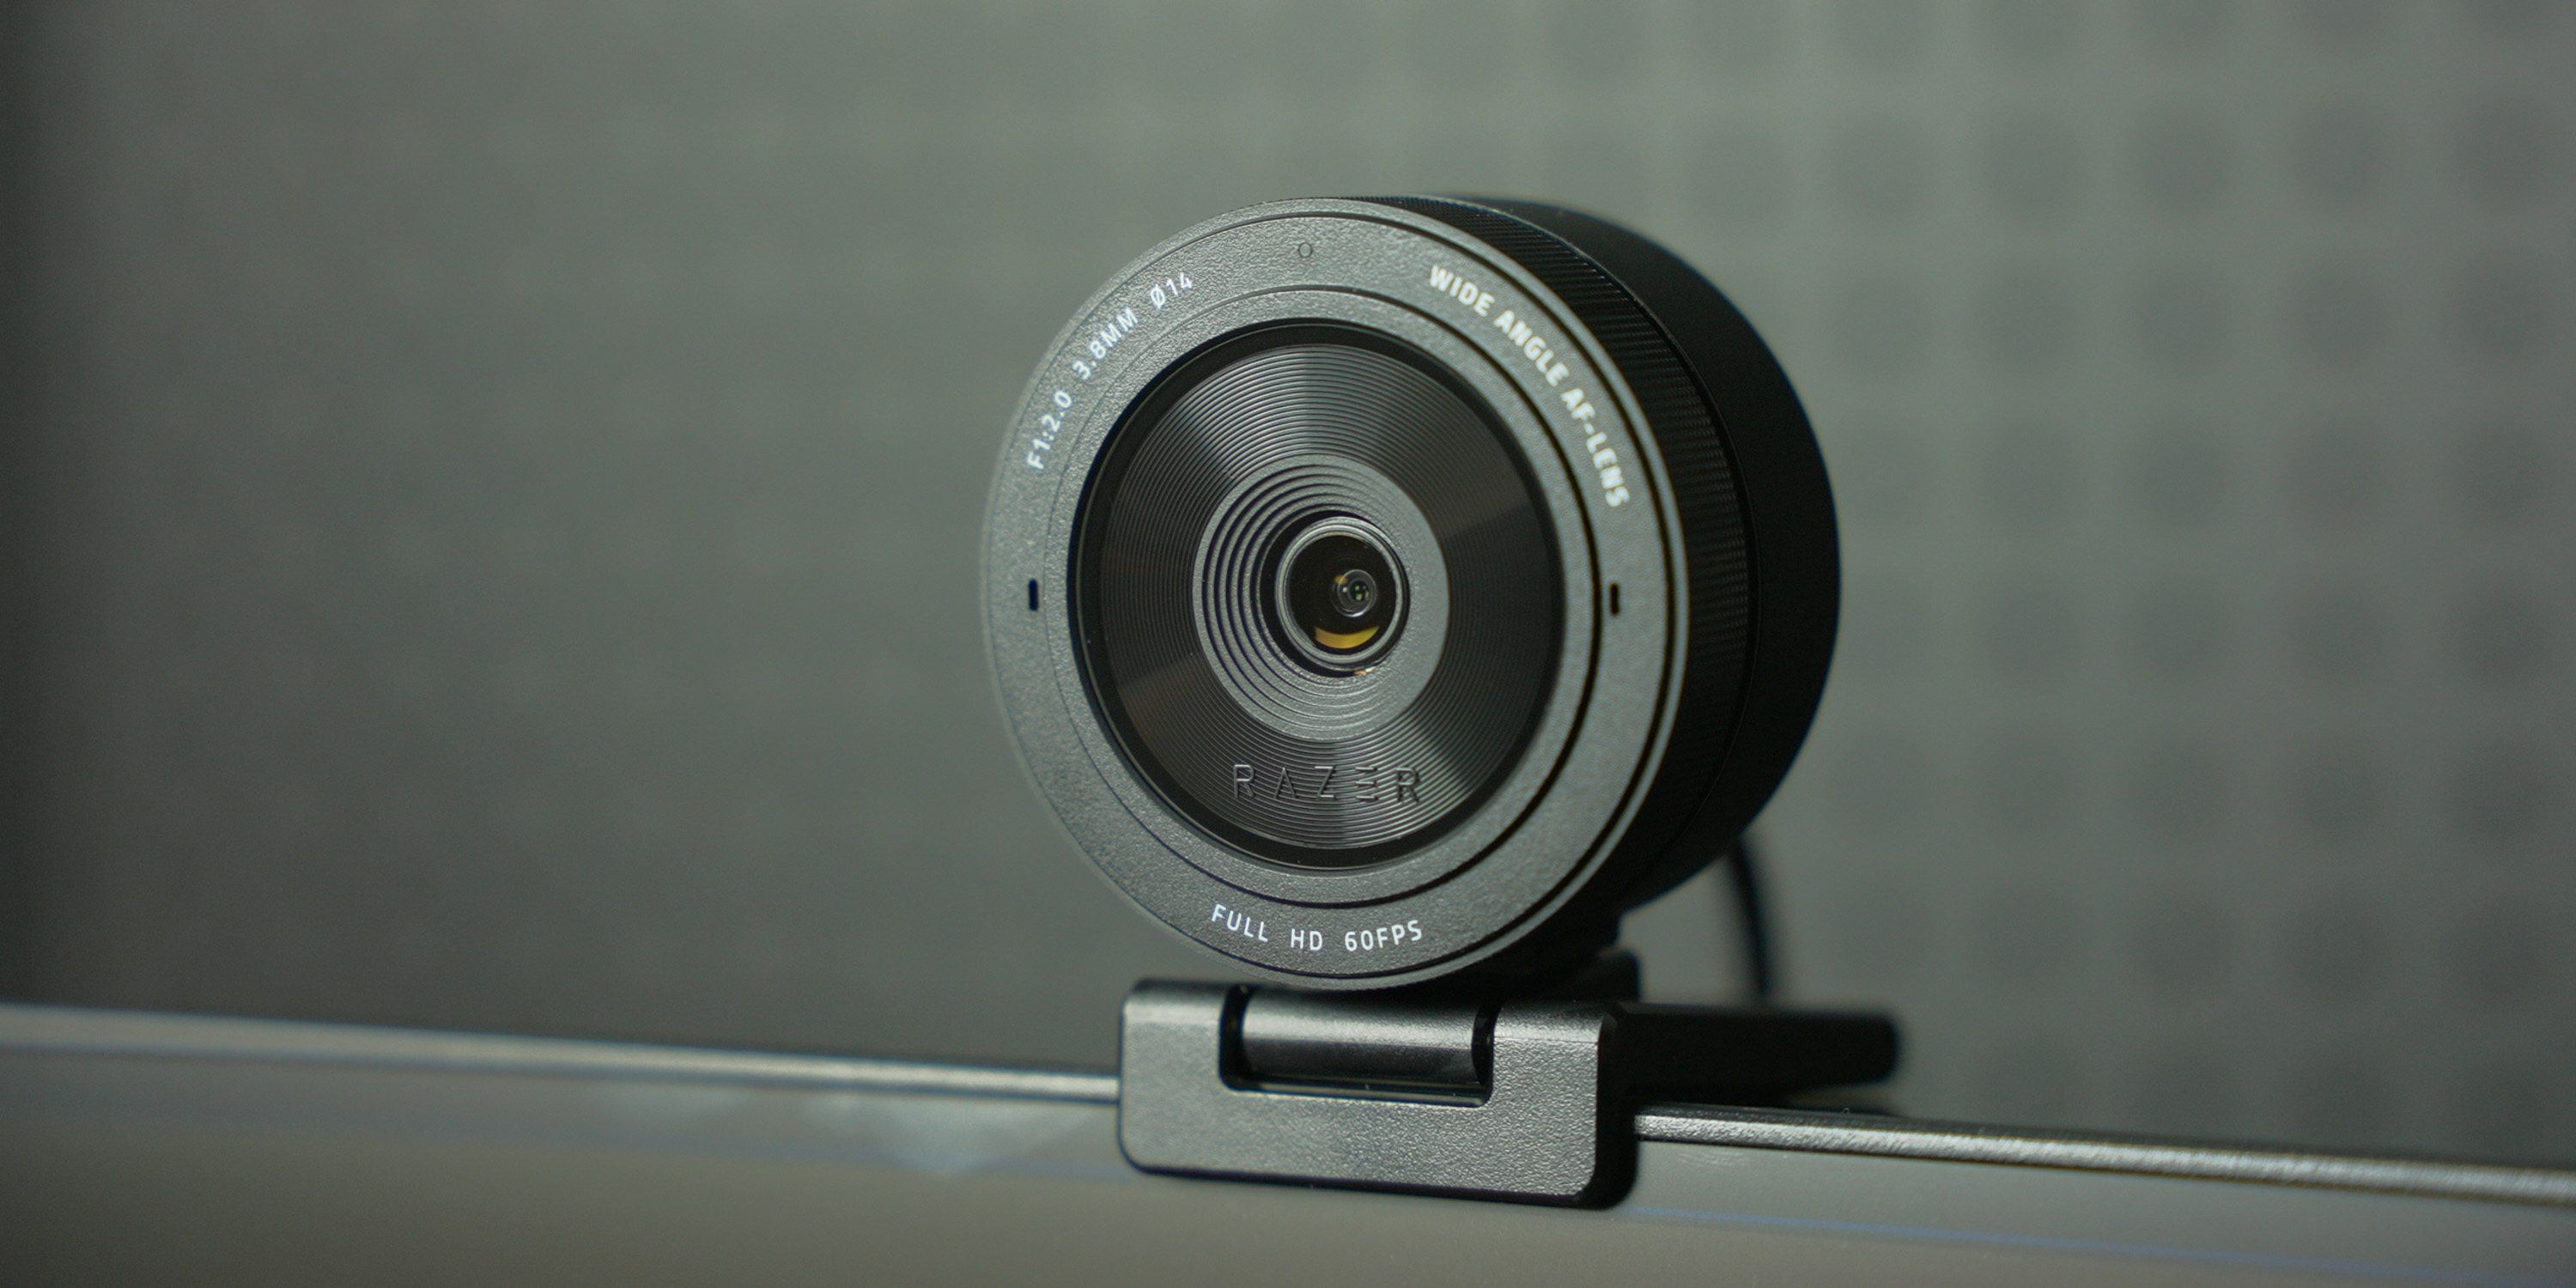 Razer Kiyo Pro Ultra Review: A Sharp but Pricey 4K Webcam